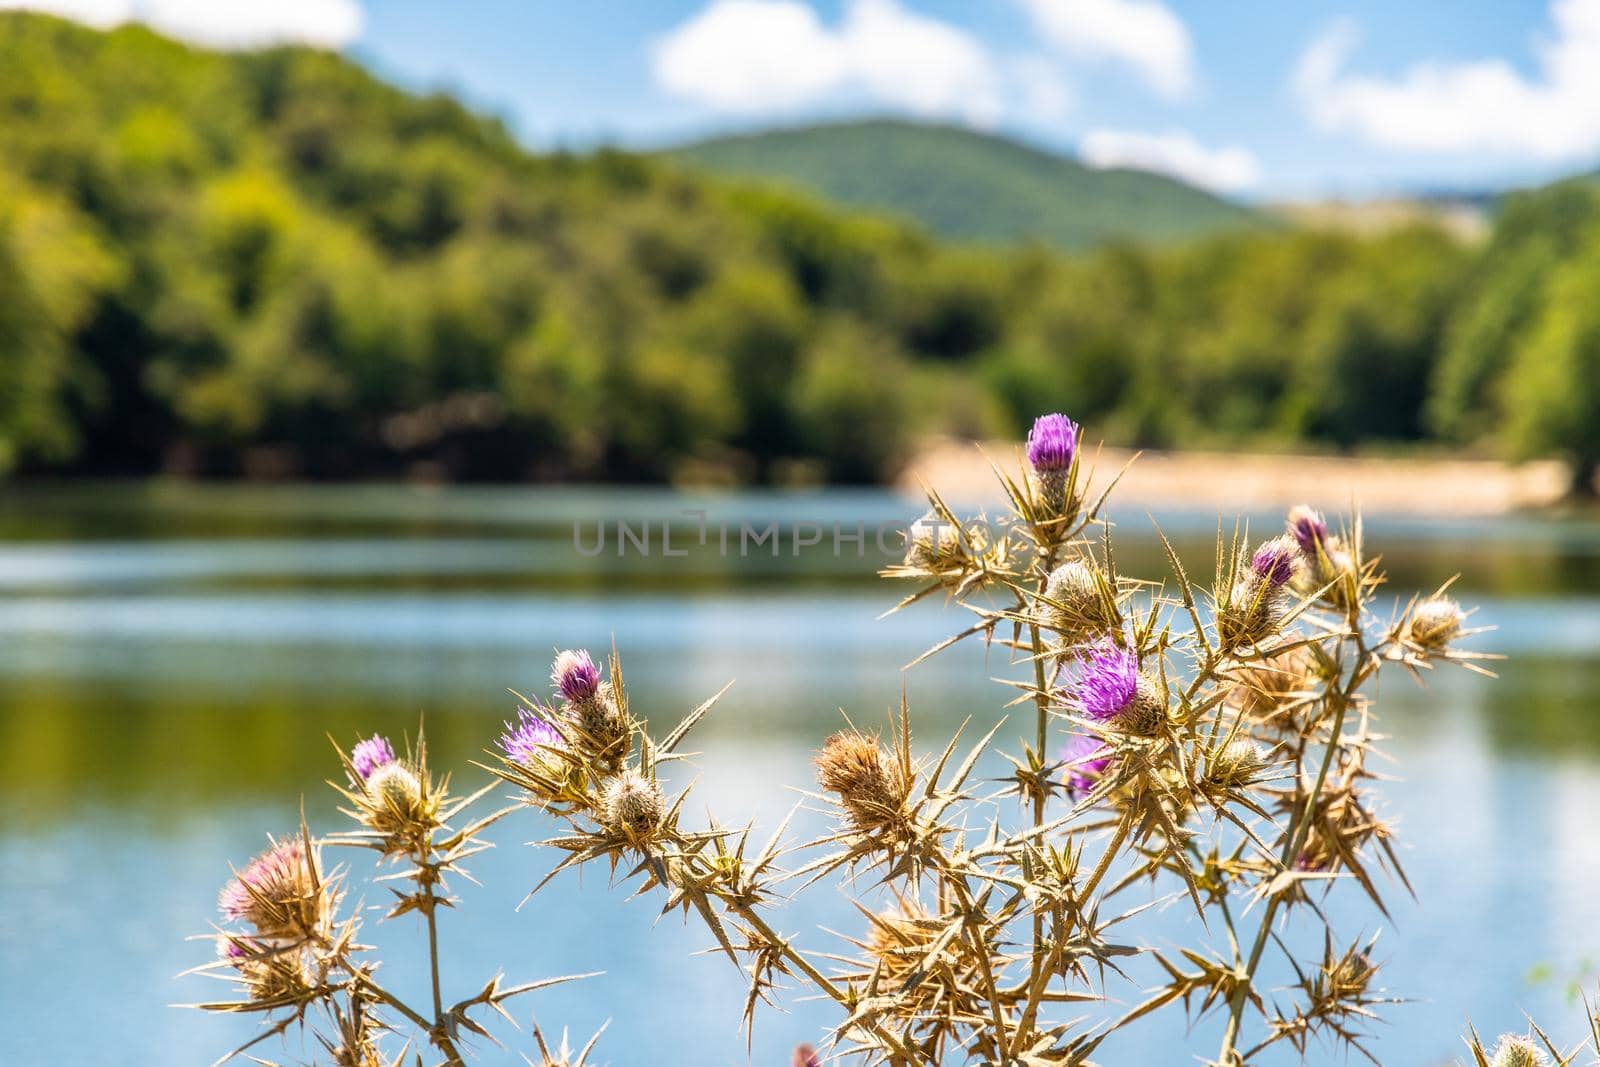 Maulazzo Lake on a sunny summer day, Nebrodi Park, Sicily, Italy